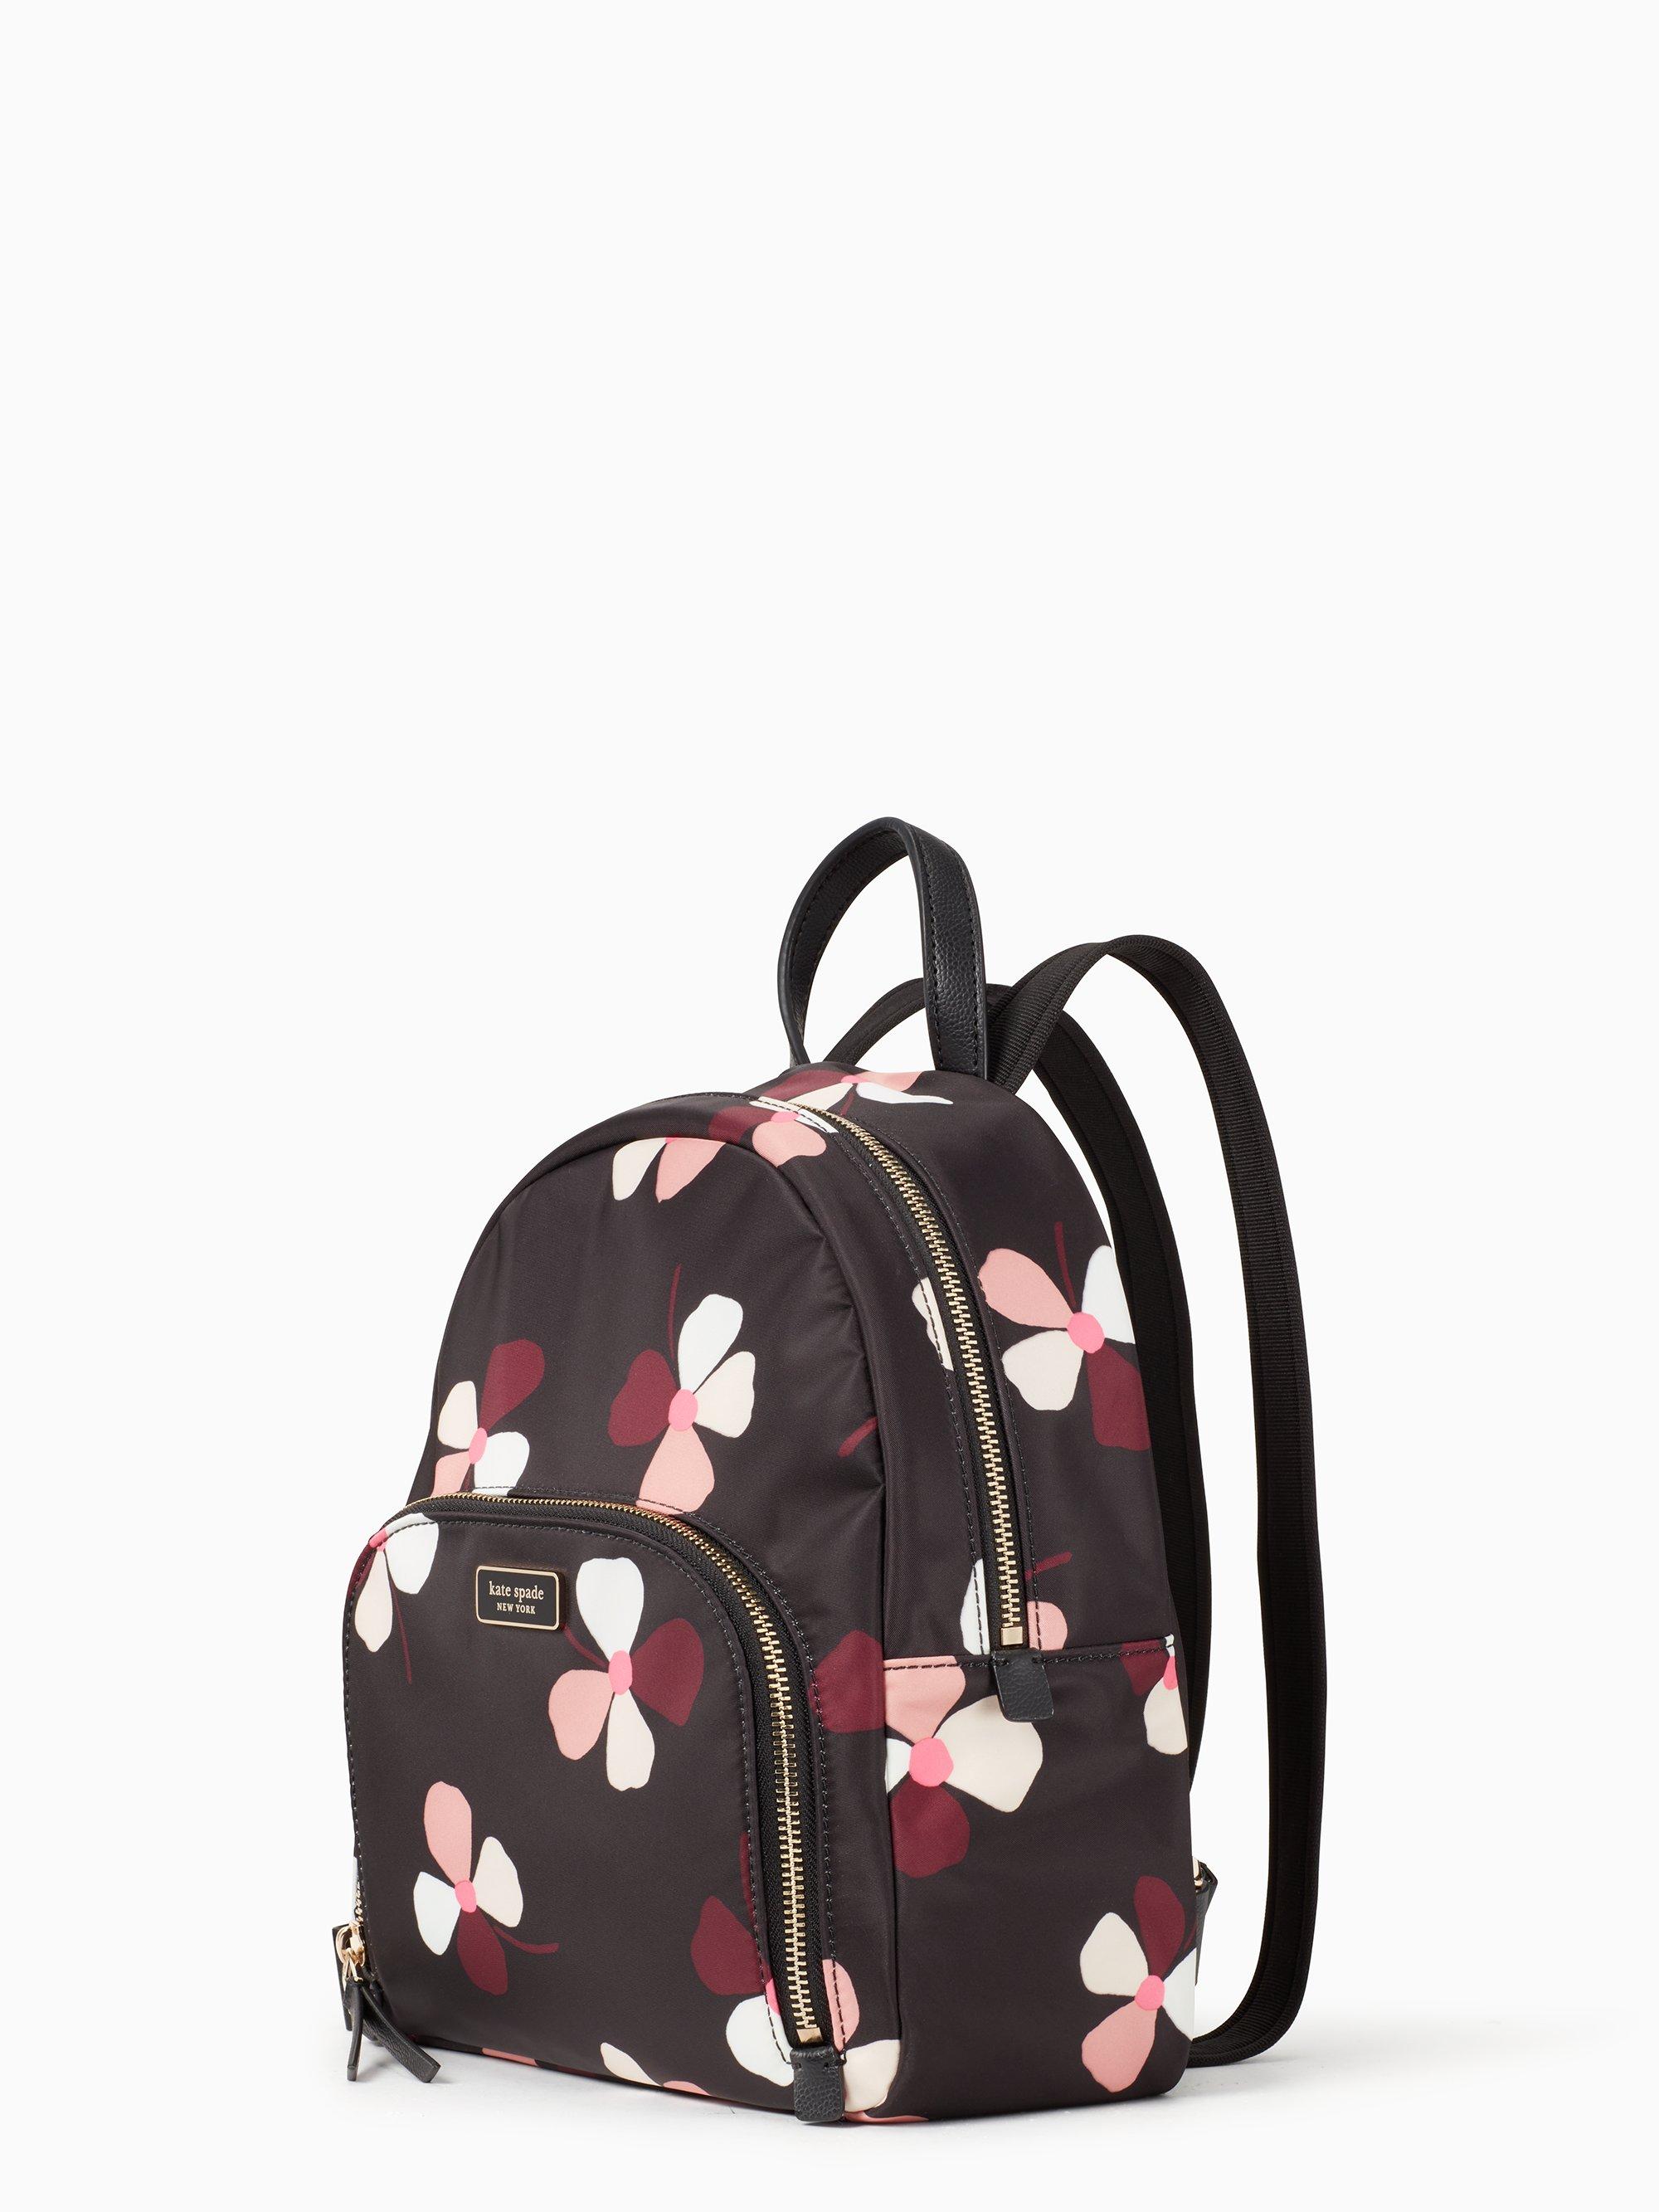 Kate Spade Black Floral Backpack Outlet, 60% OFF 